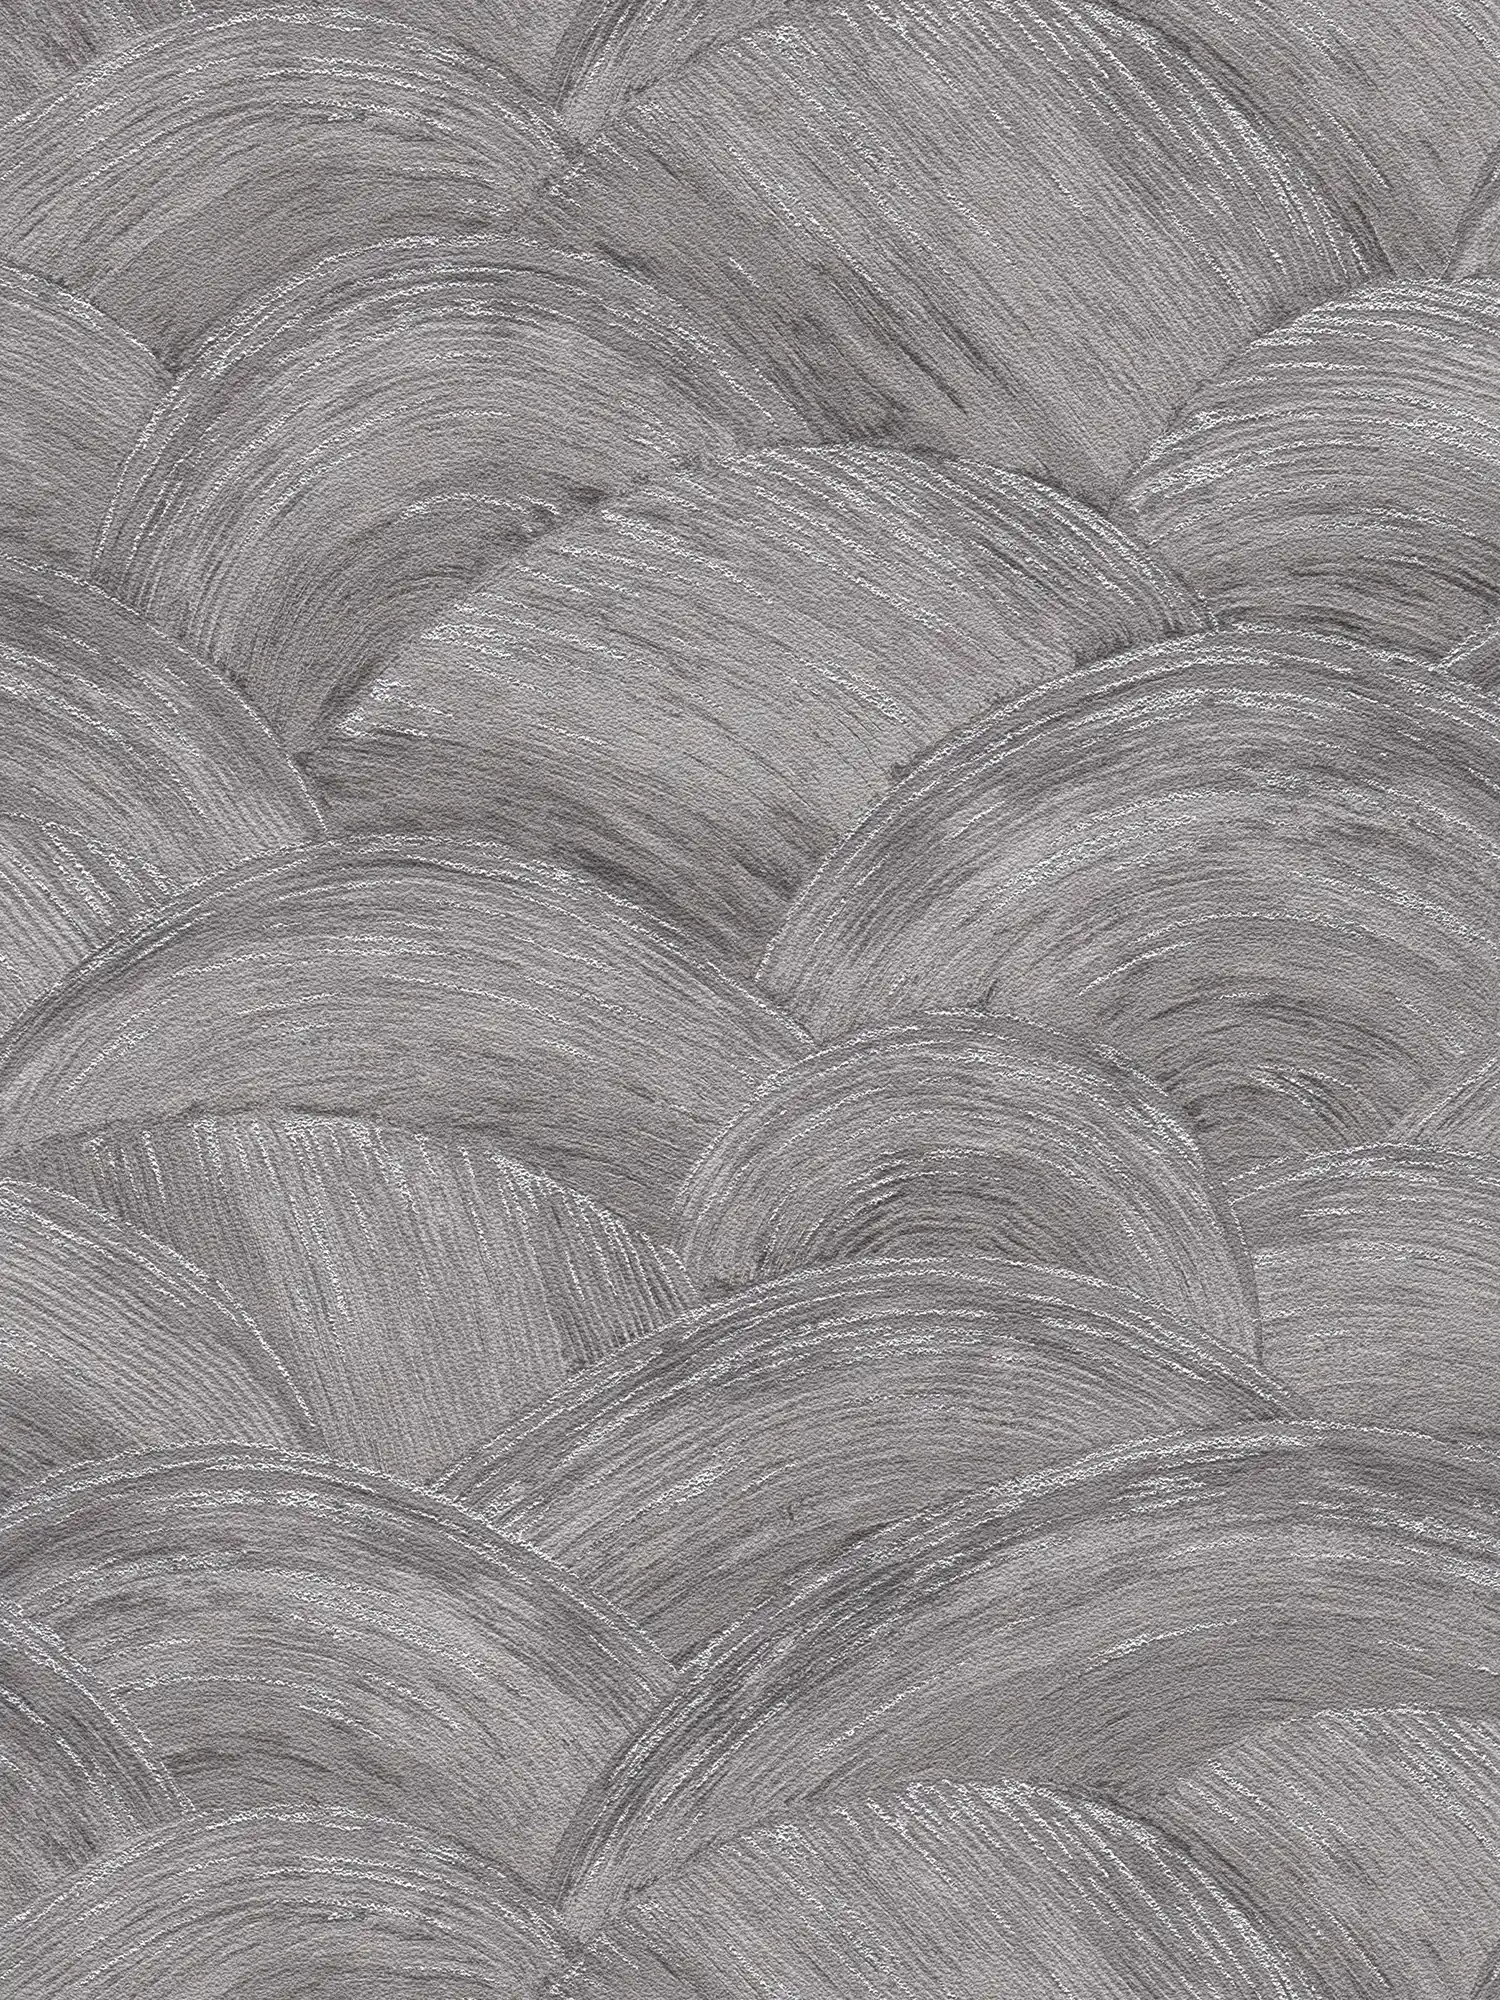             Papel pintado no tejido con textura ondulada y efecto brillante - gris, plata
        